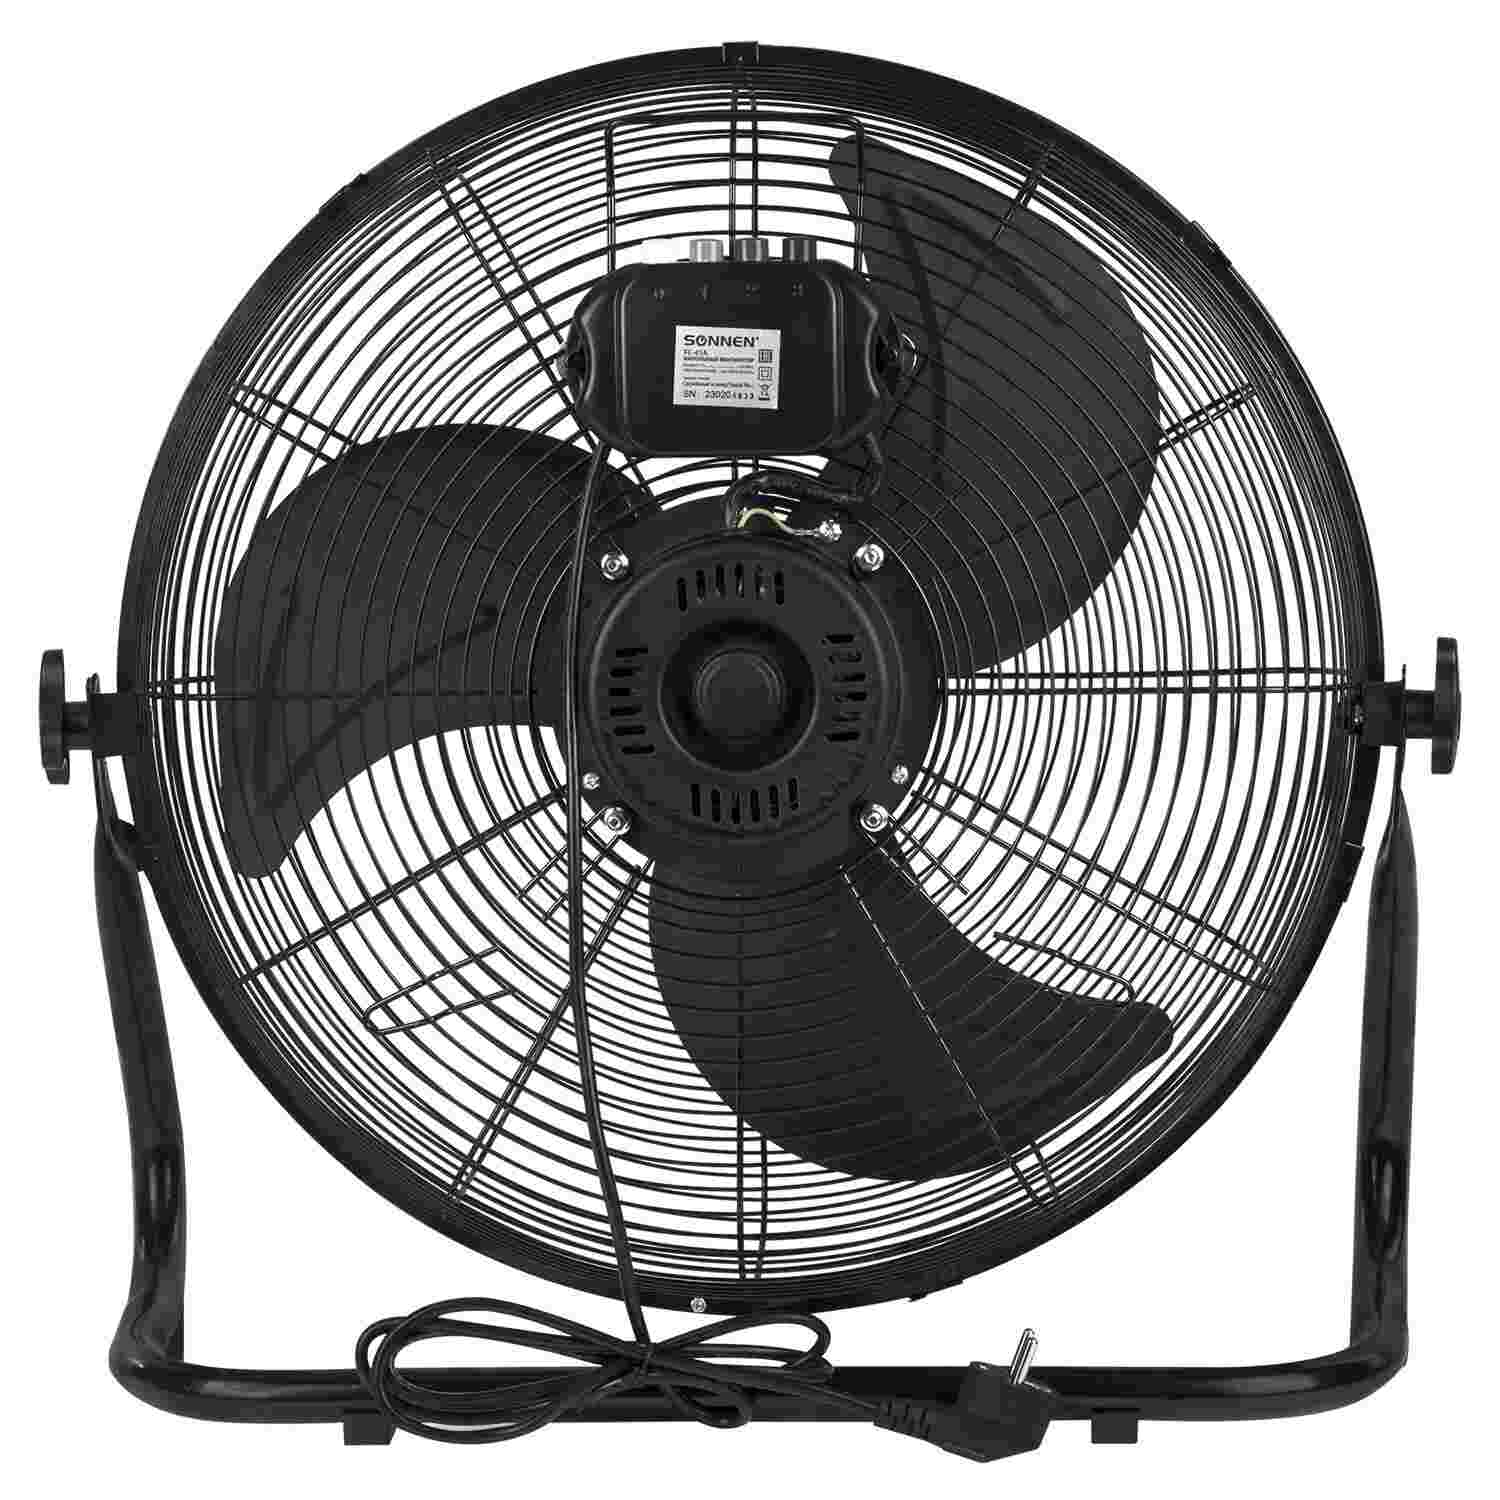 картинка Вентилятор напольный SONNEN FE-45A, черный, 120 Вт, 3 скорости,  455734 от магазина Альфанит в Кунгуре